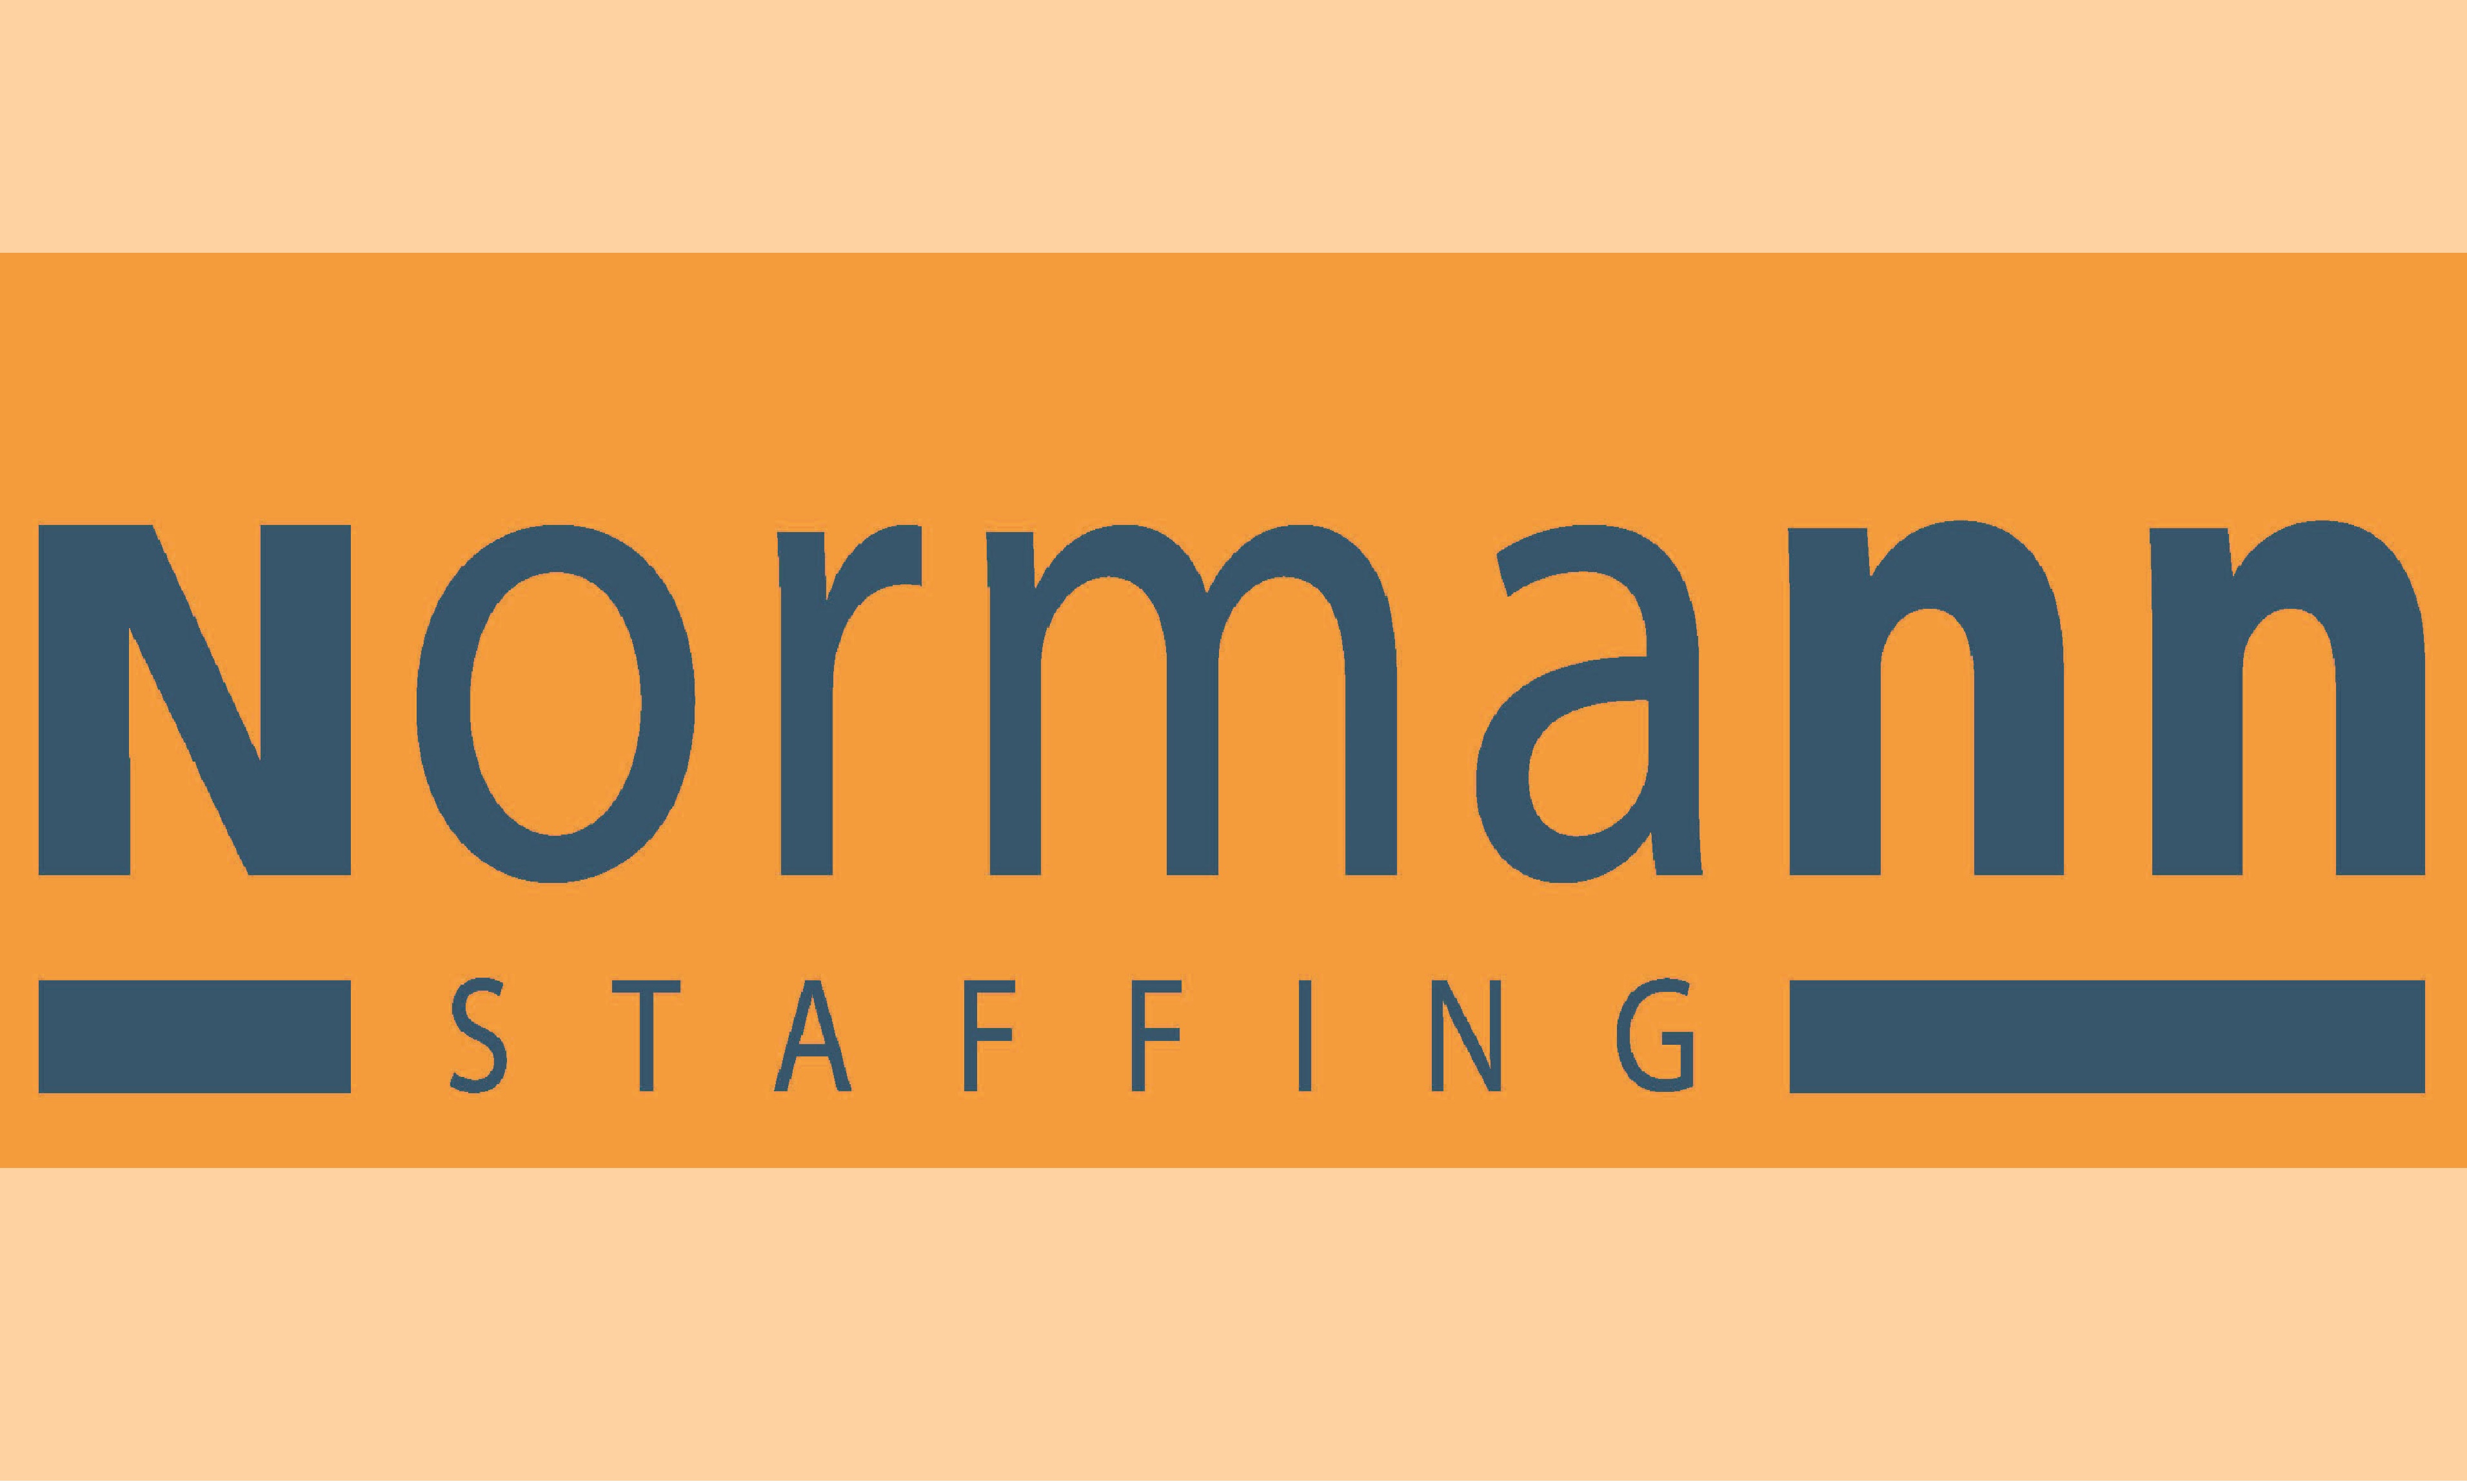 Normann Staffing